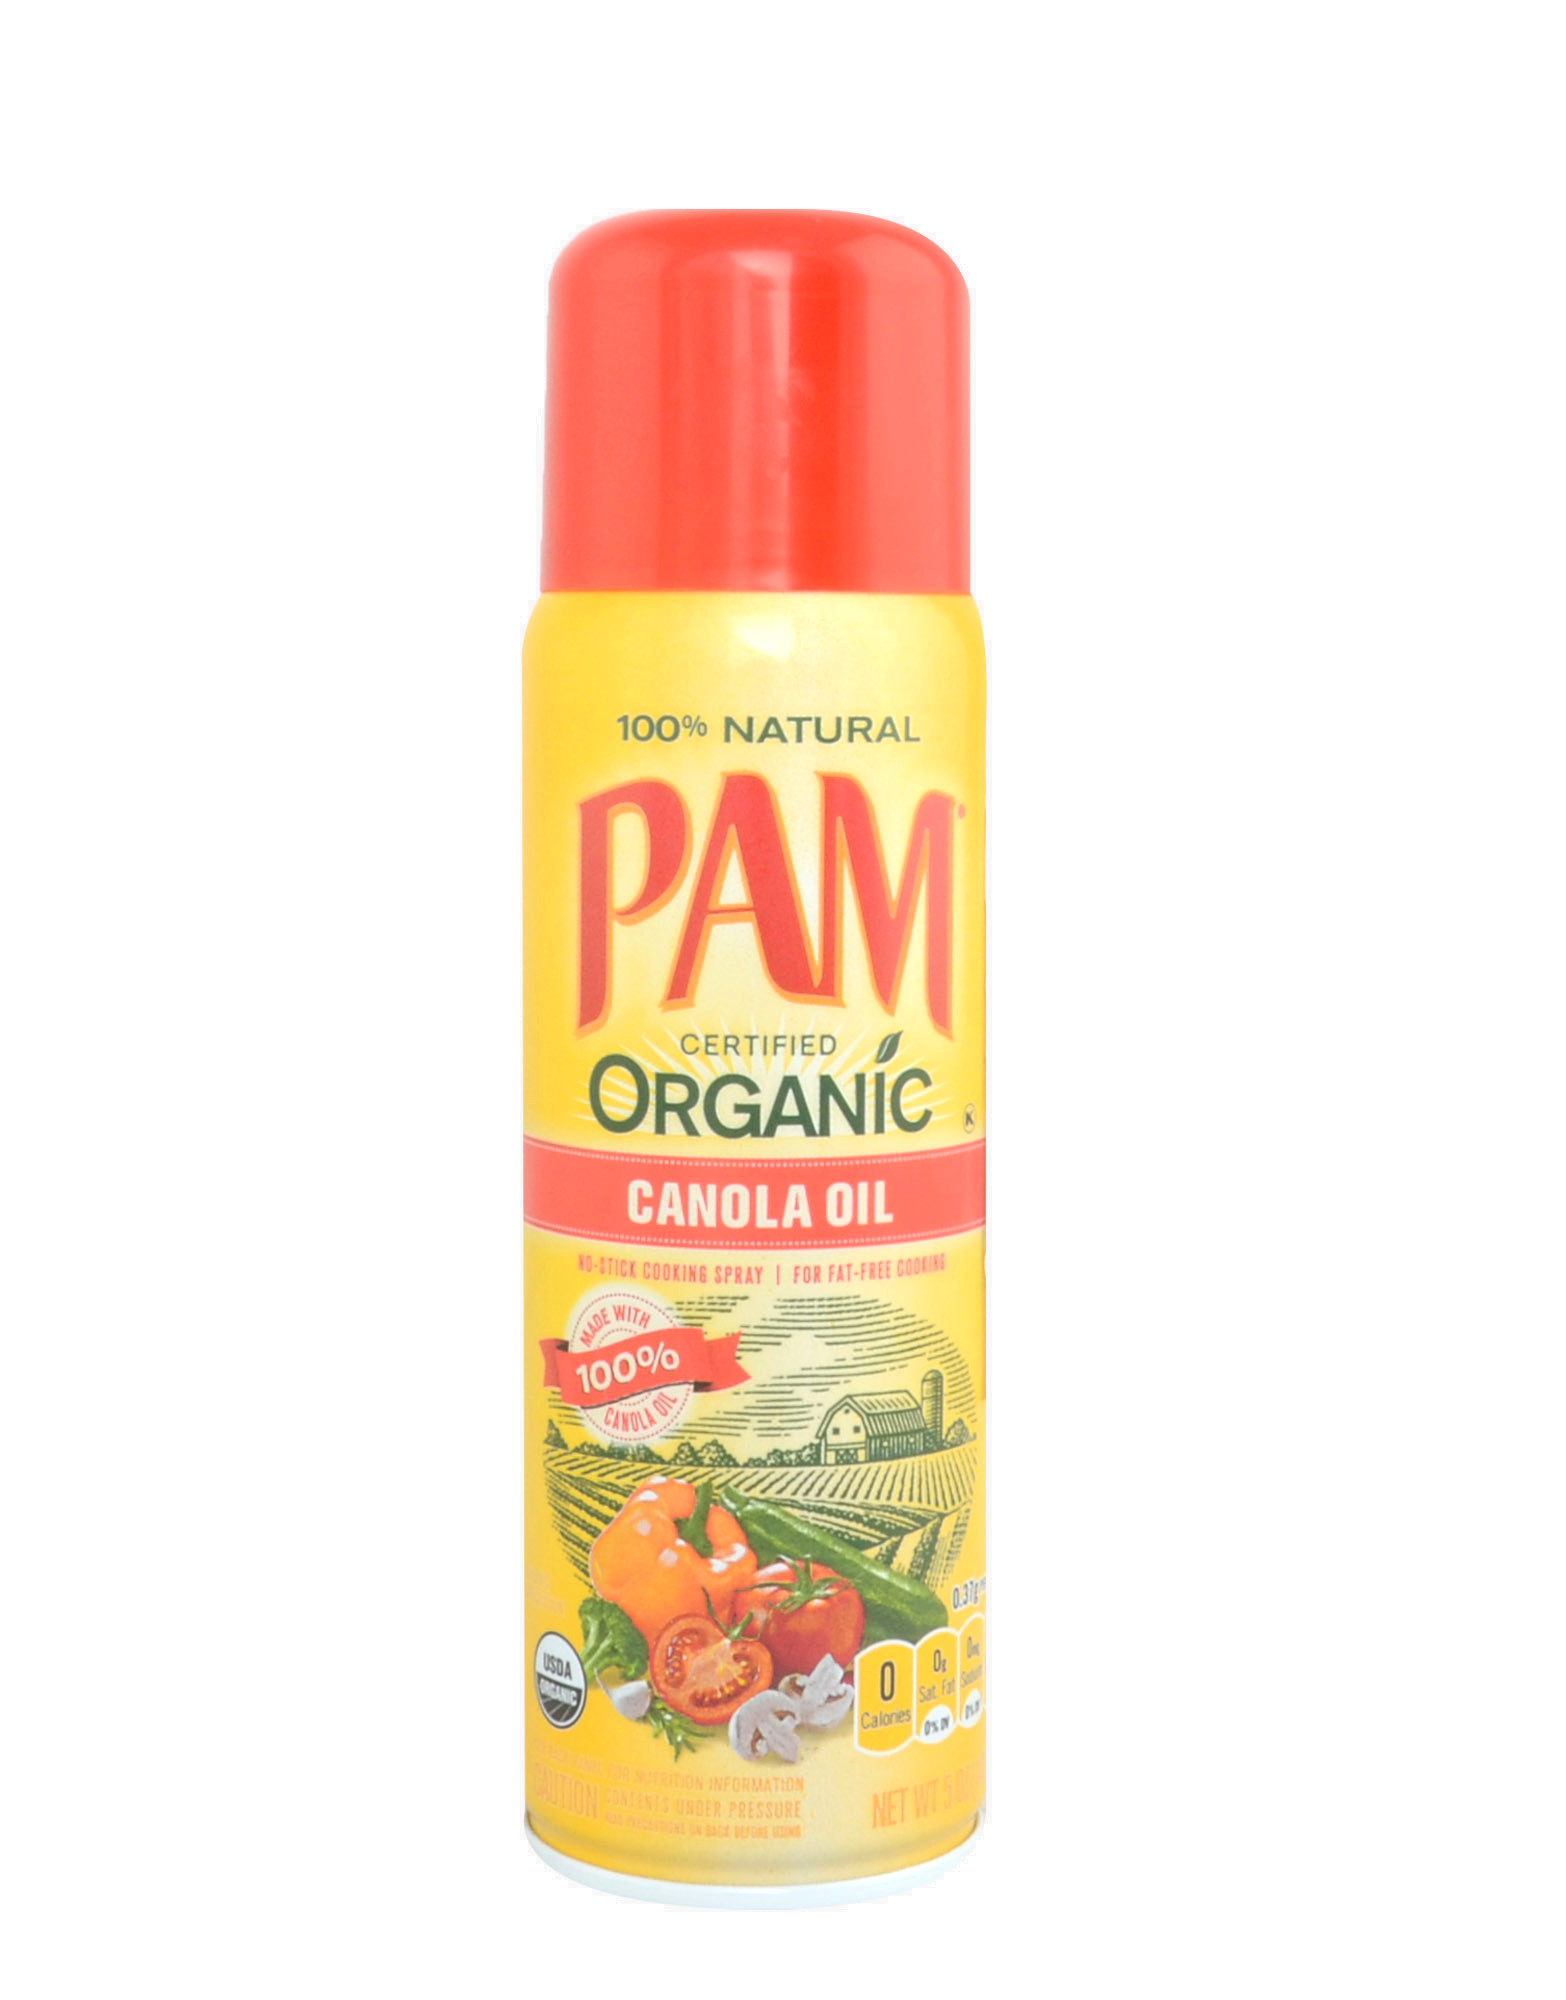 Pam oil spray